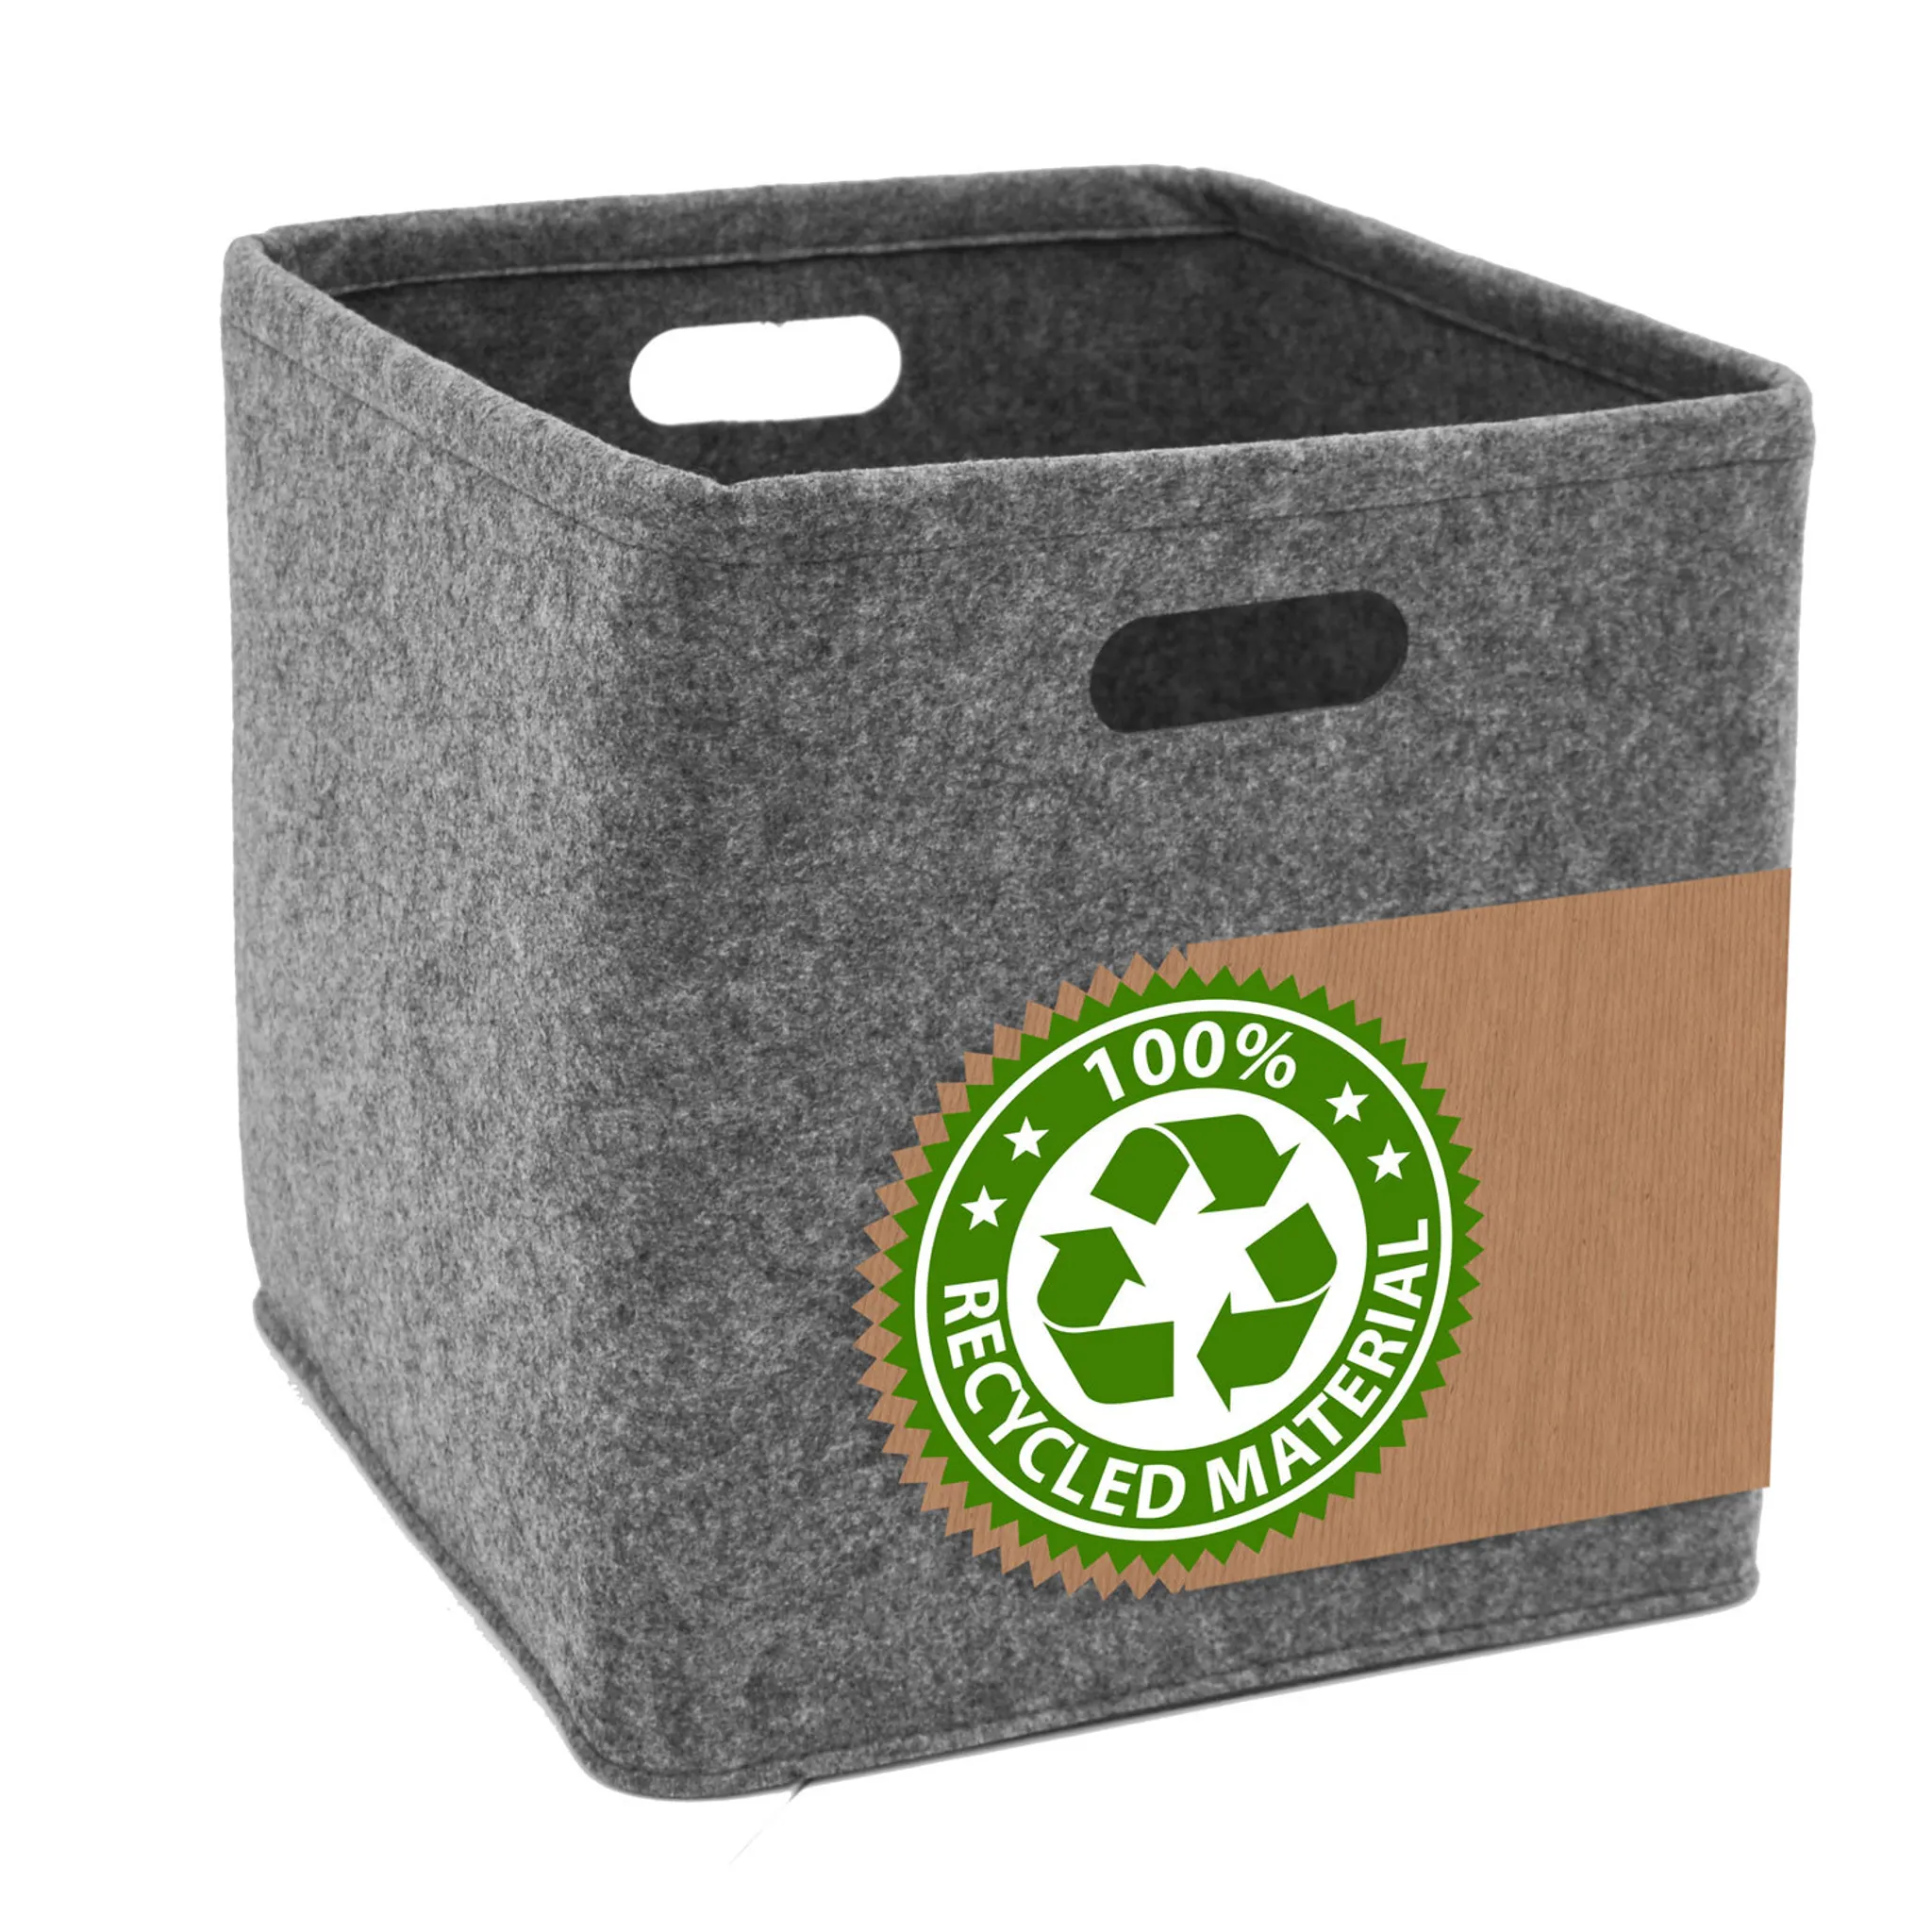 Ordnungsbox mit Deckel FILZ Aufbewahrungsbox Filzkorb Kiste Schachtel 2  Farben